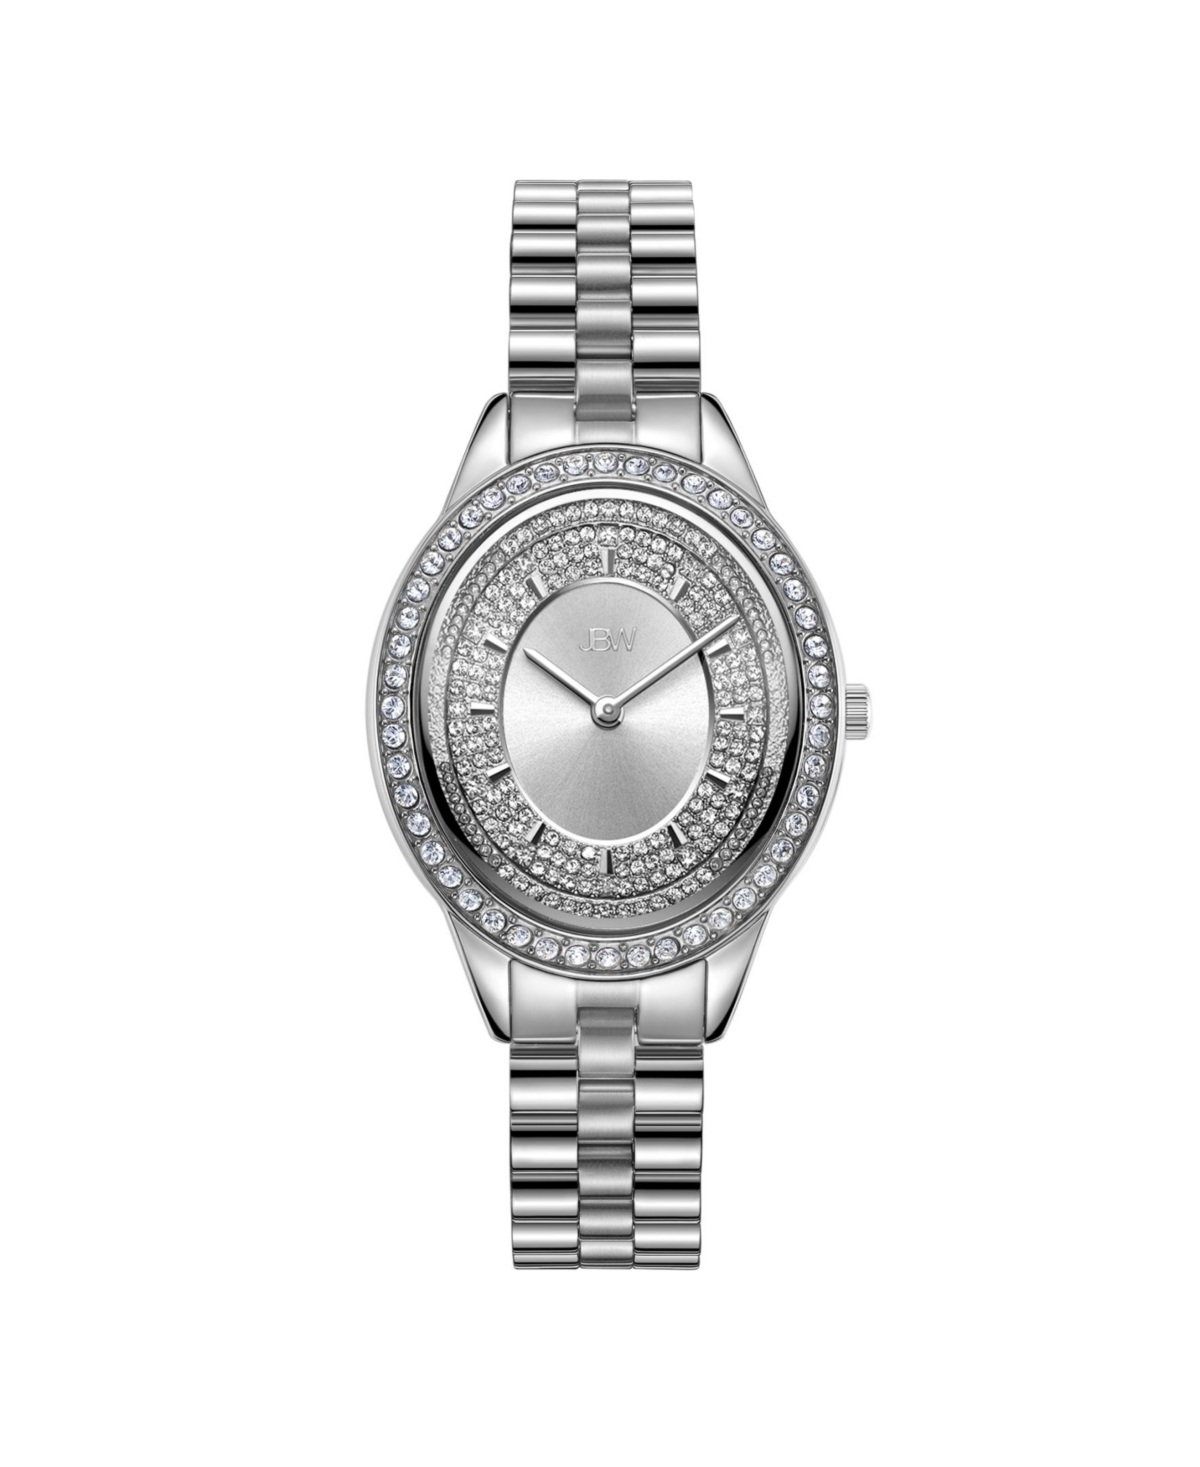 Women's Bellini Diamond (1/8 ct. t.w.) Watch in Stainless-steel Watch 30mm - Silver